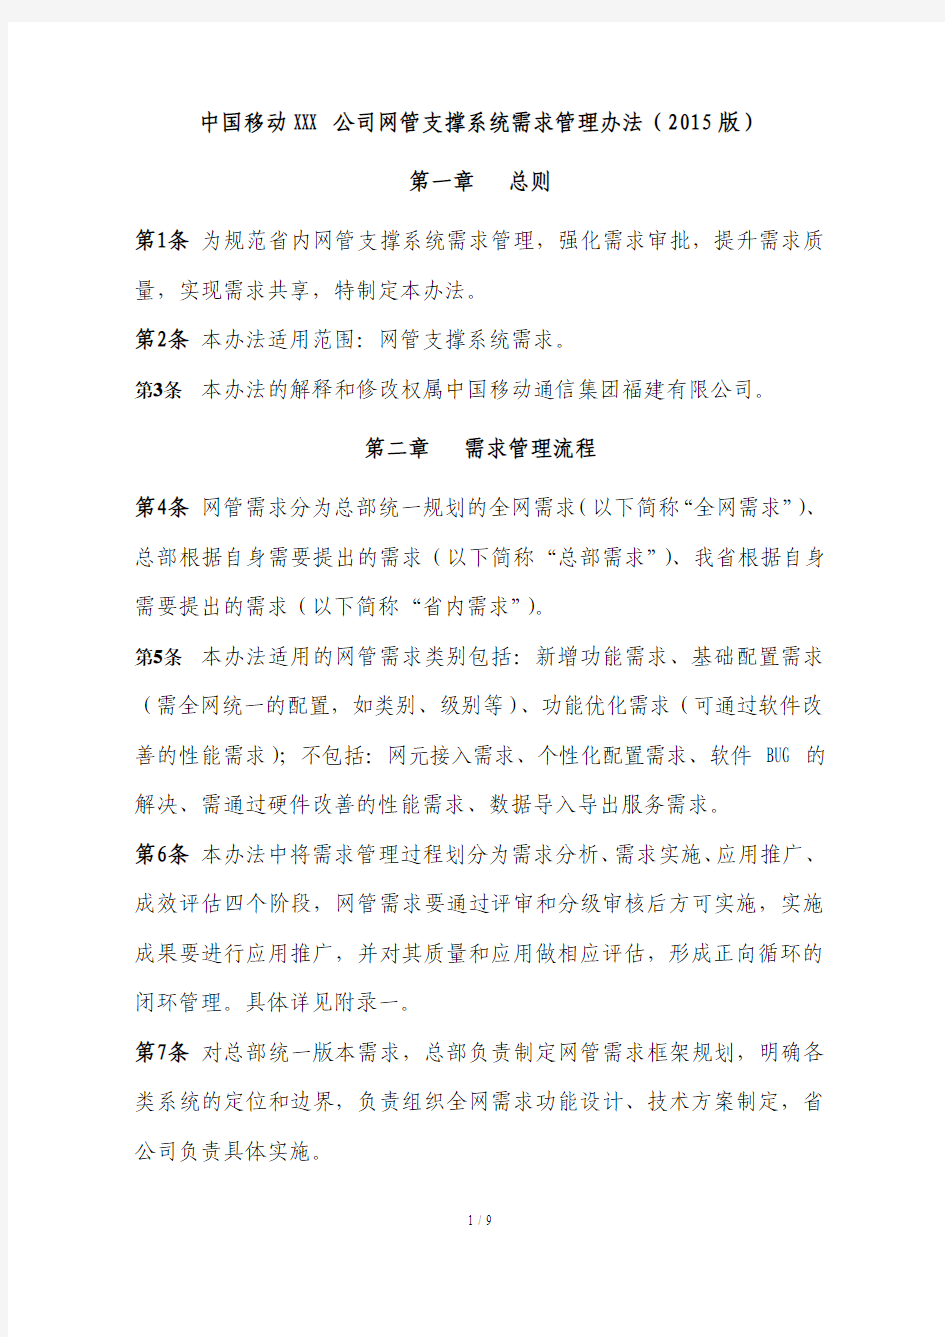 中国移动XXXXXX公司网管支撑系统需求管理办法(2015)